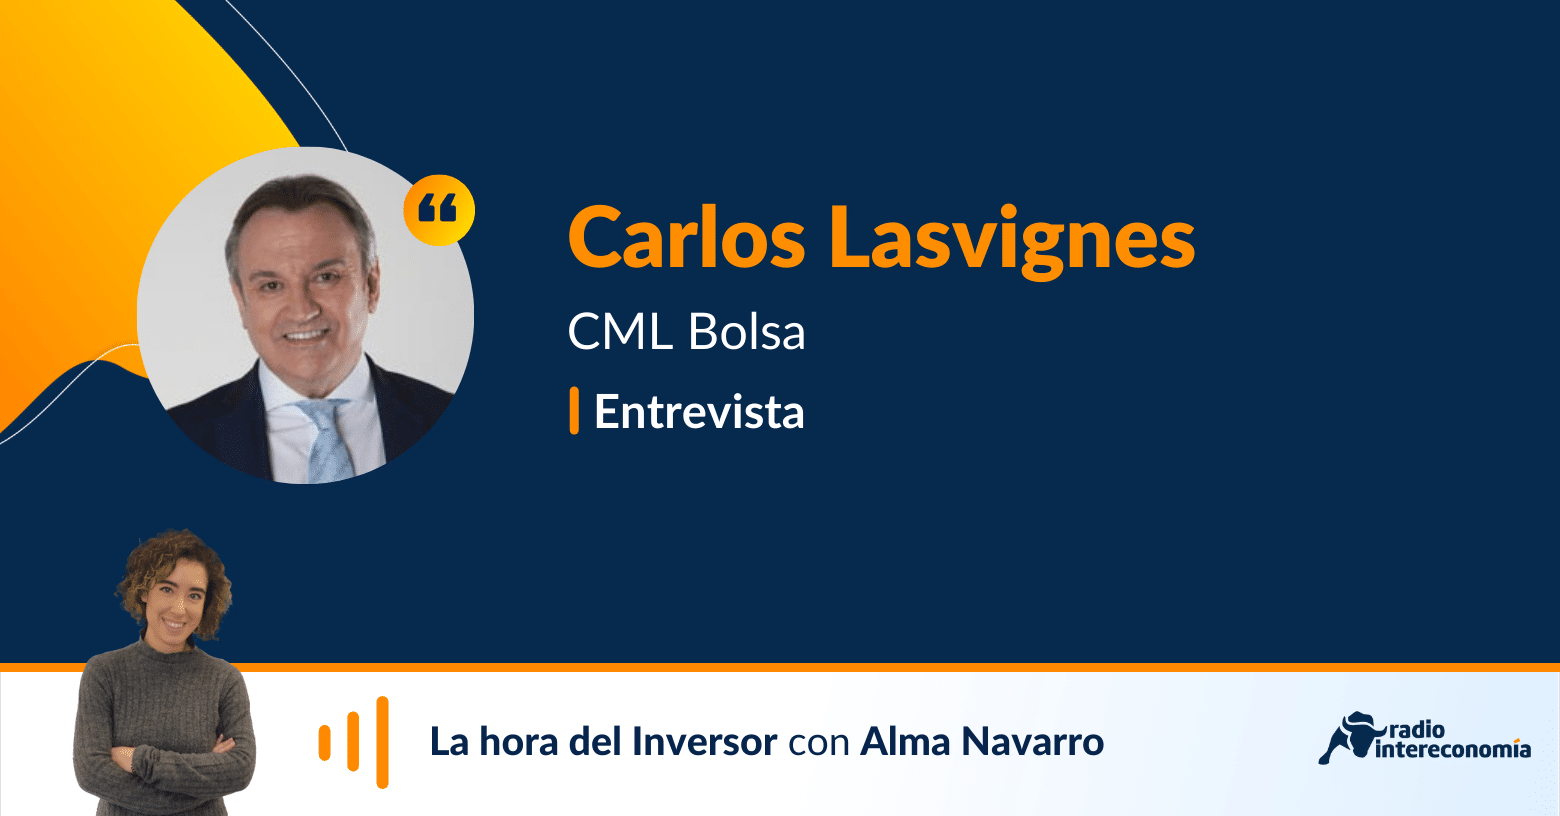 Aprender a invertir con el profesor Carlos Lasvignes, de CML Bolsa